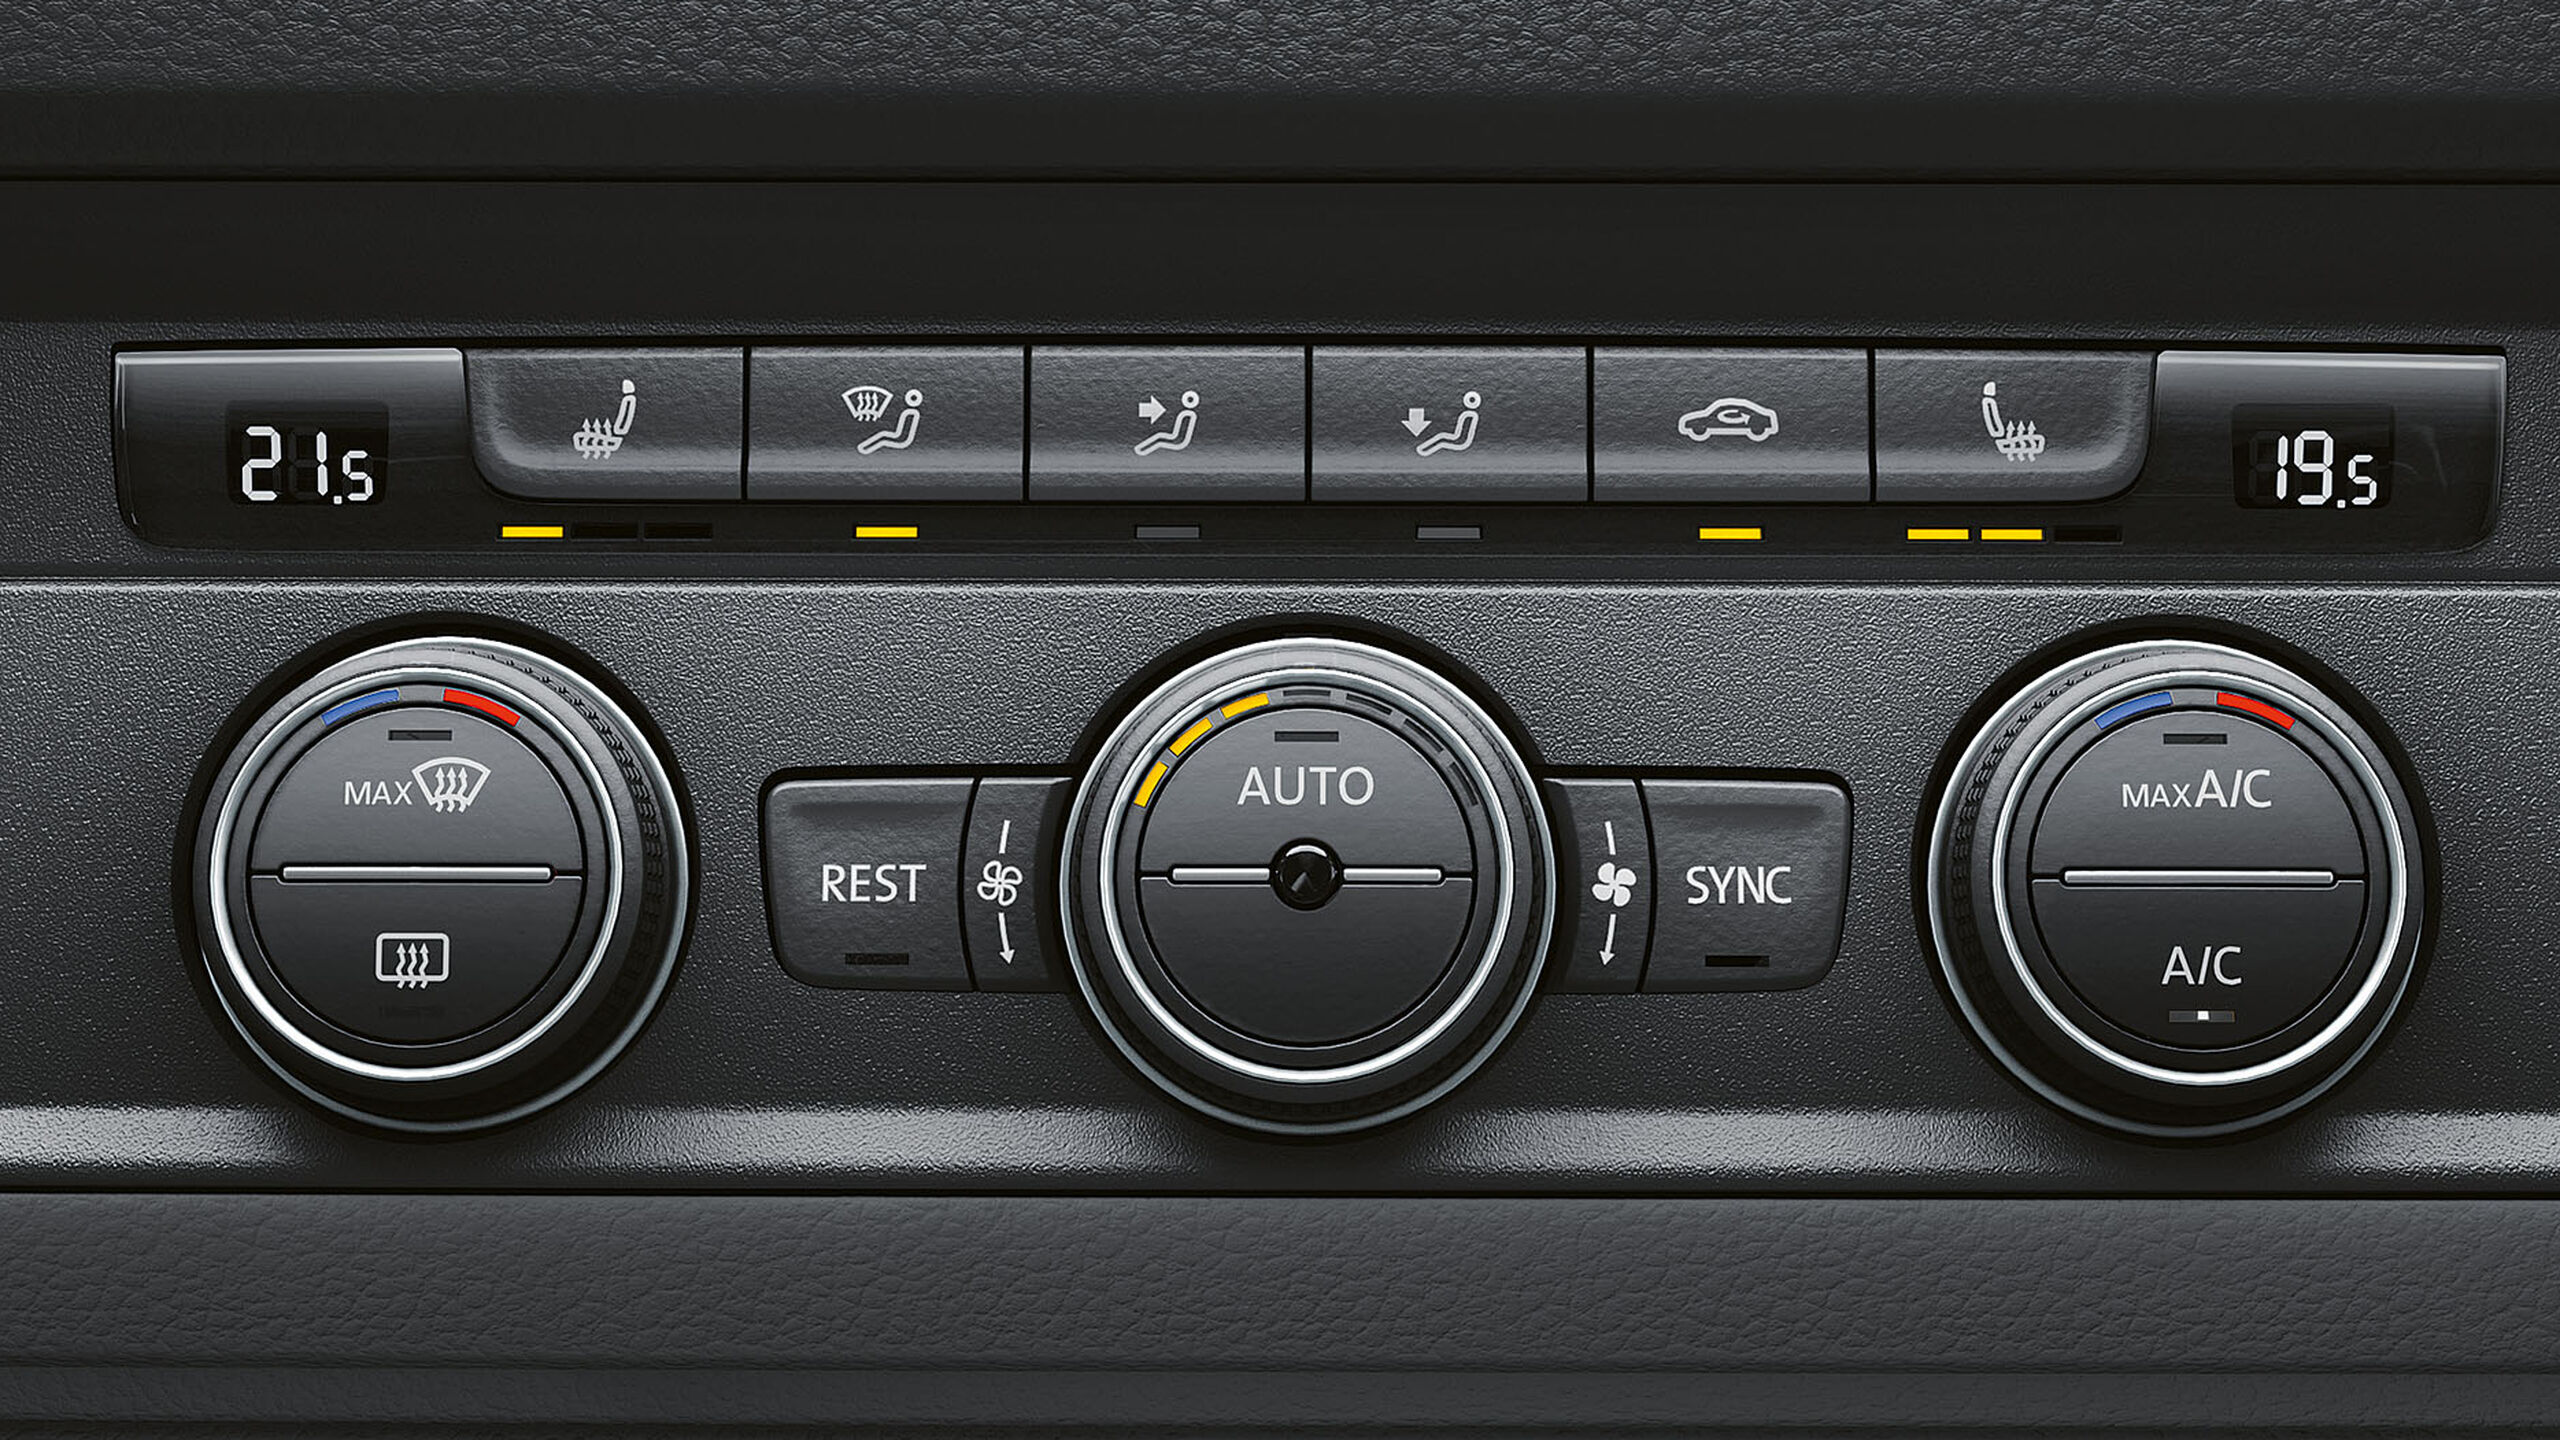 O ar condicionado "Climatronic" do Volkswagen Veículos Comerciais.